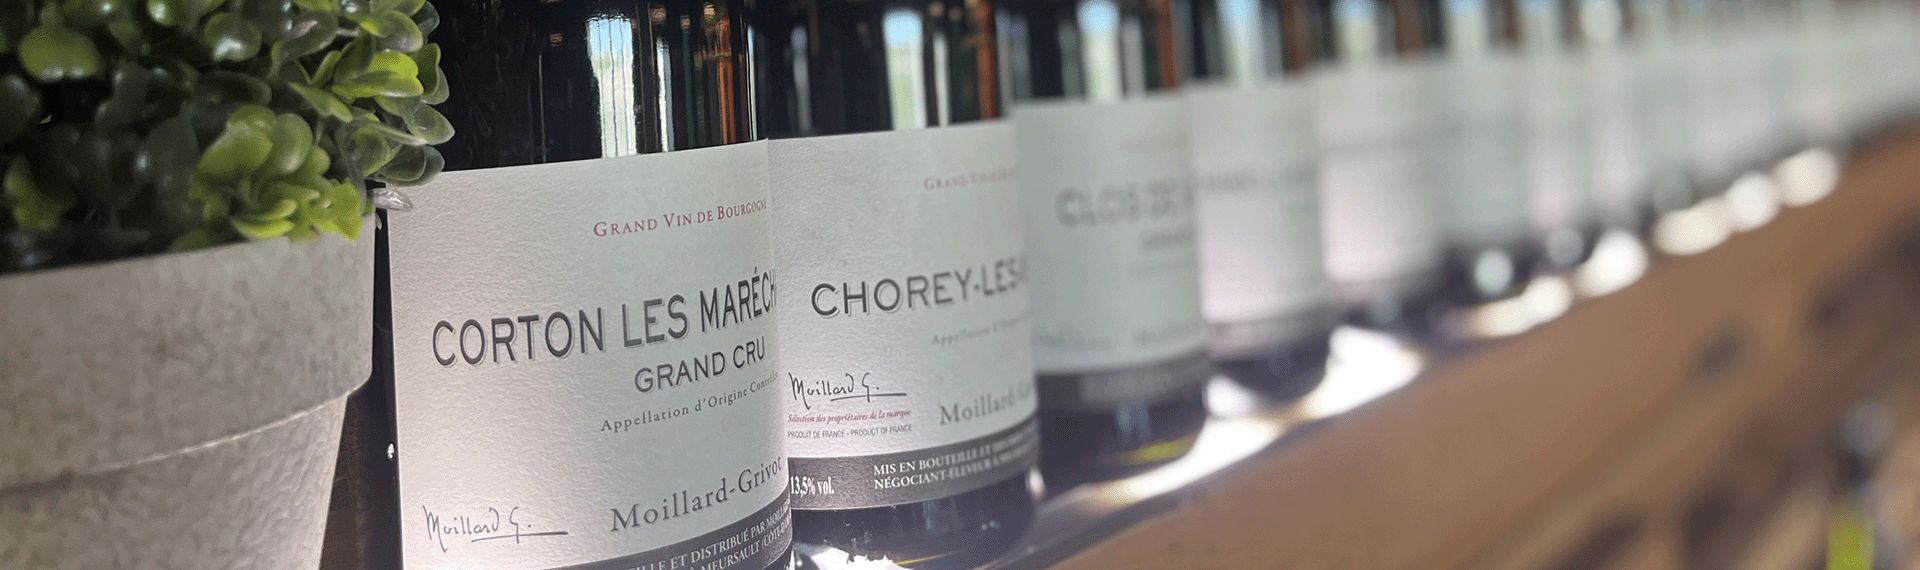 bouteilles de vin de bourgogne